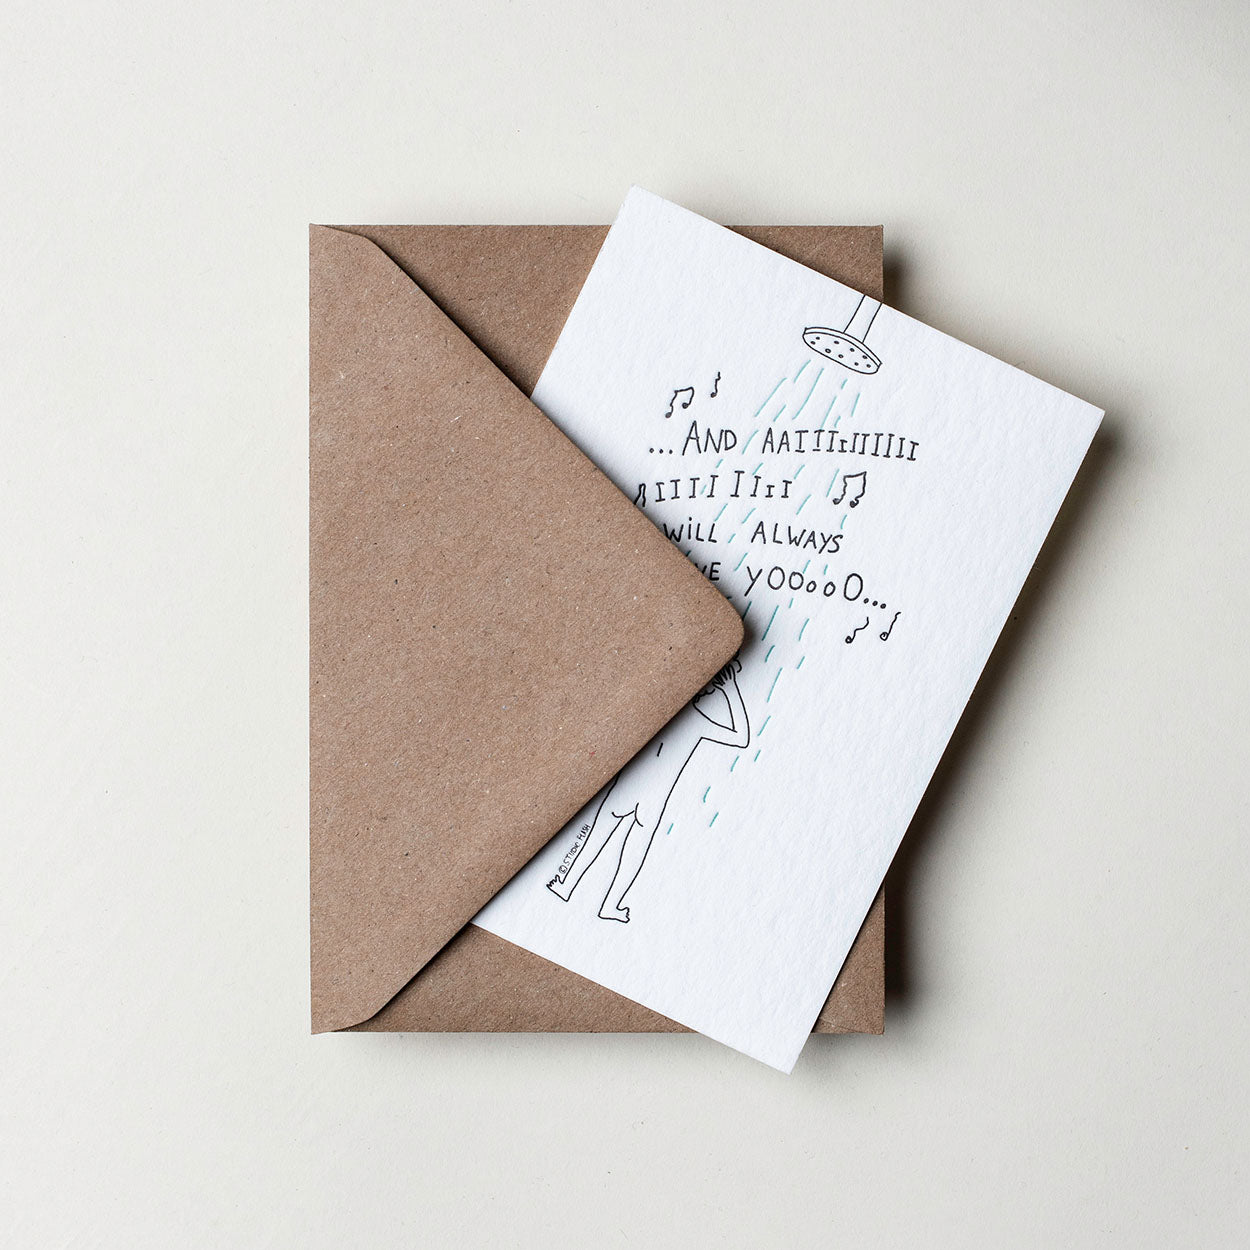 Schwarz Weiß Postkarte "And Iiii Will Always Love Yooooo" gedruckt auf Baumwollpapier DIN A6. Auf der Karte ist eine Person gezeichnet, die Unter der Dusche steht und singt. Die Postkarte kommt mit einem karton Farbenden Briefumschlag.